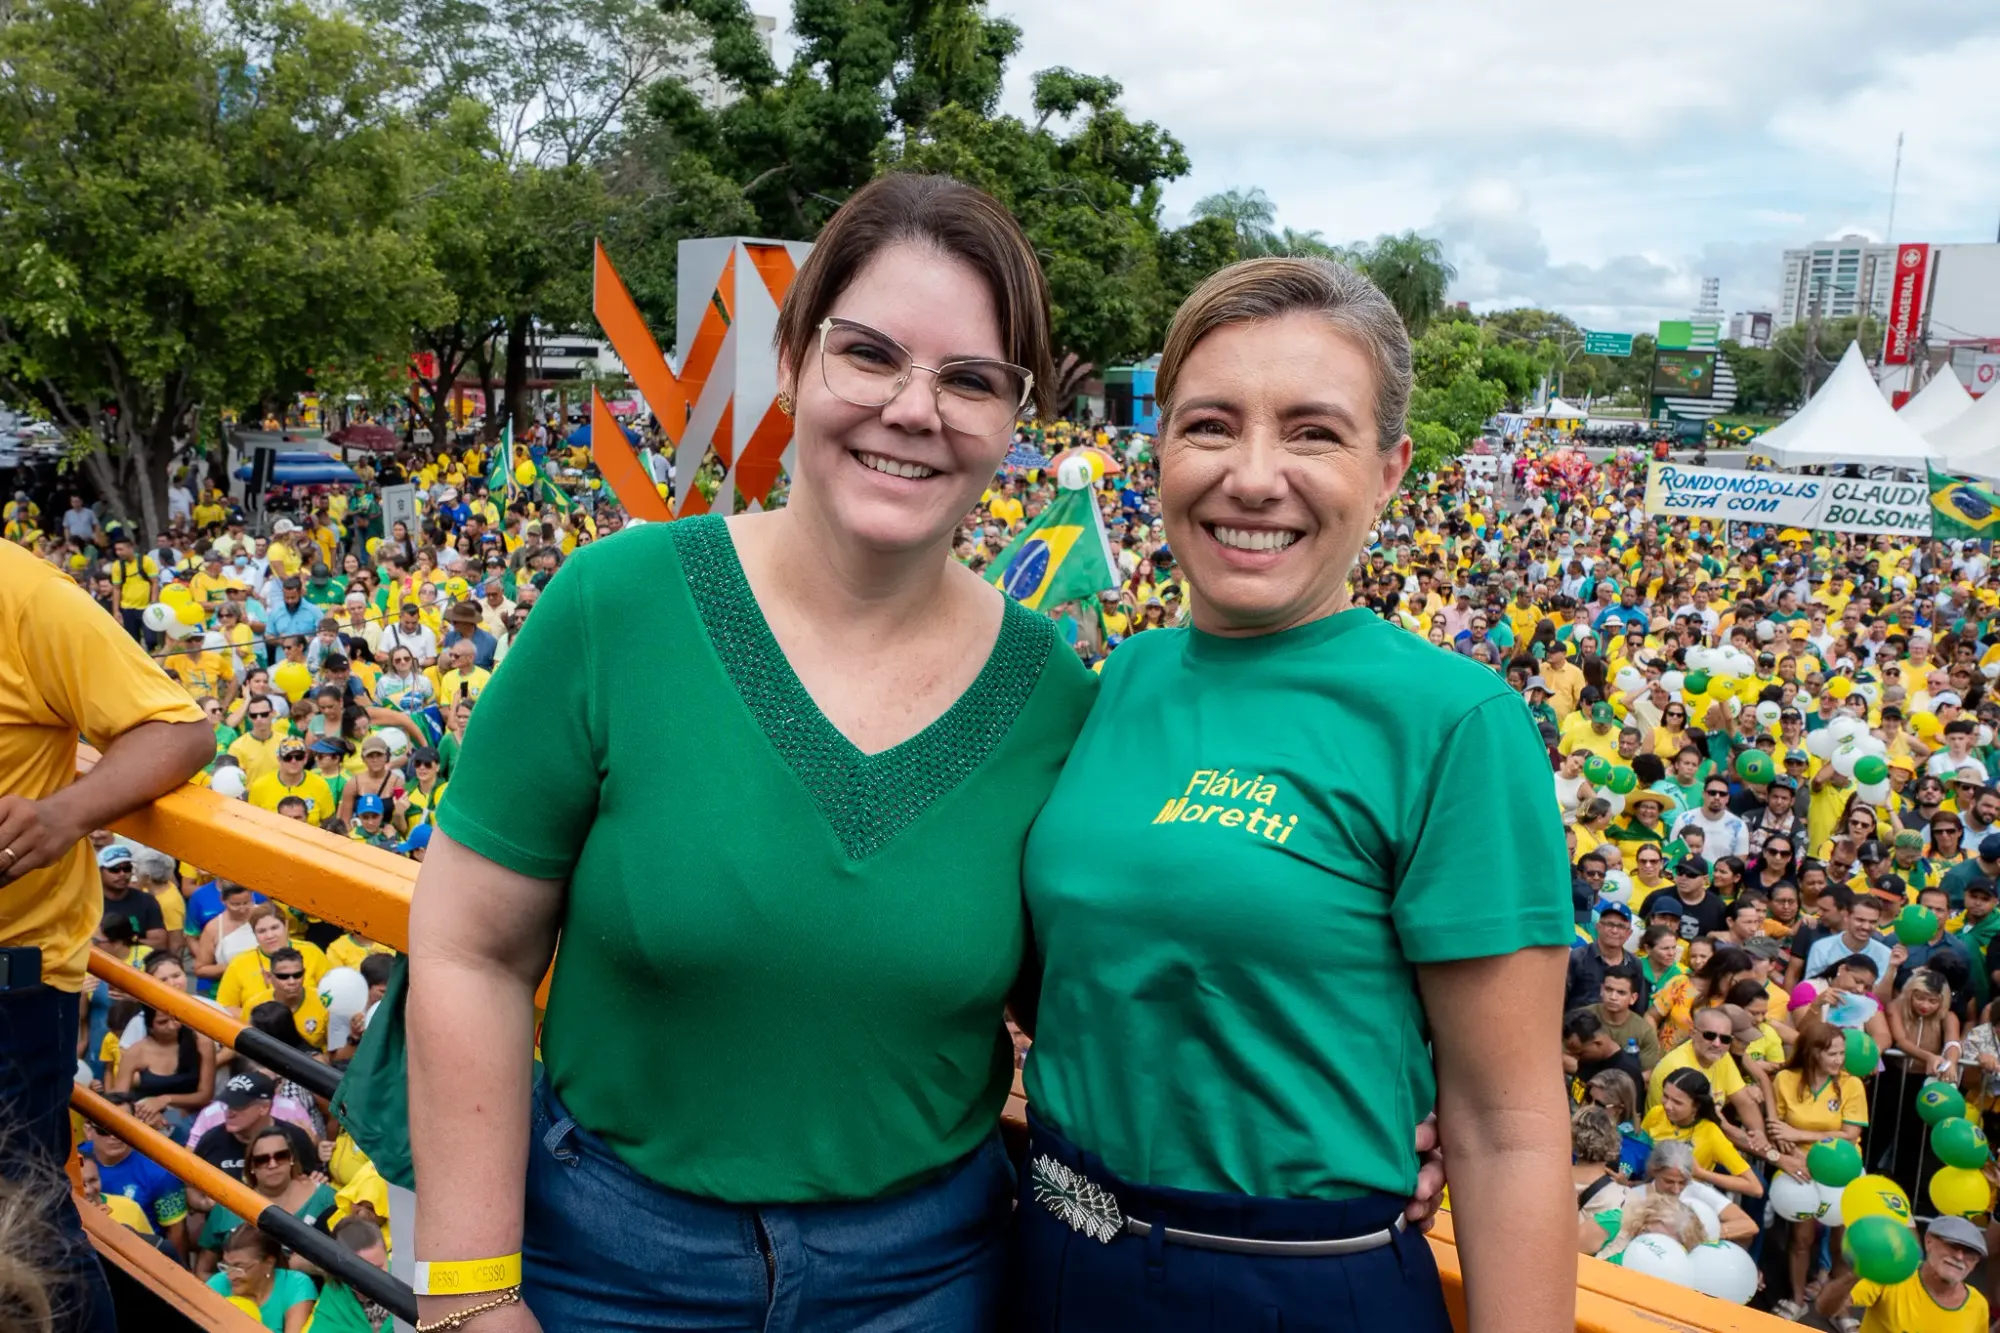 Liderança de Coronel Fernanda inspira mulheres na política, afirma Flávia Moretti